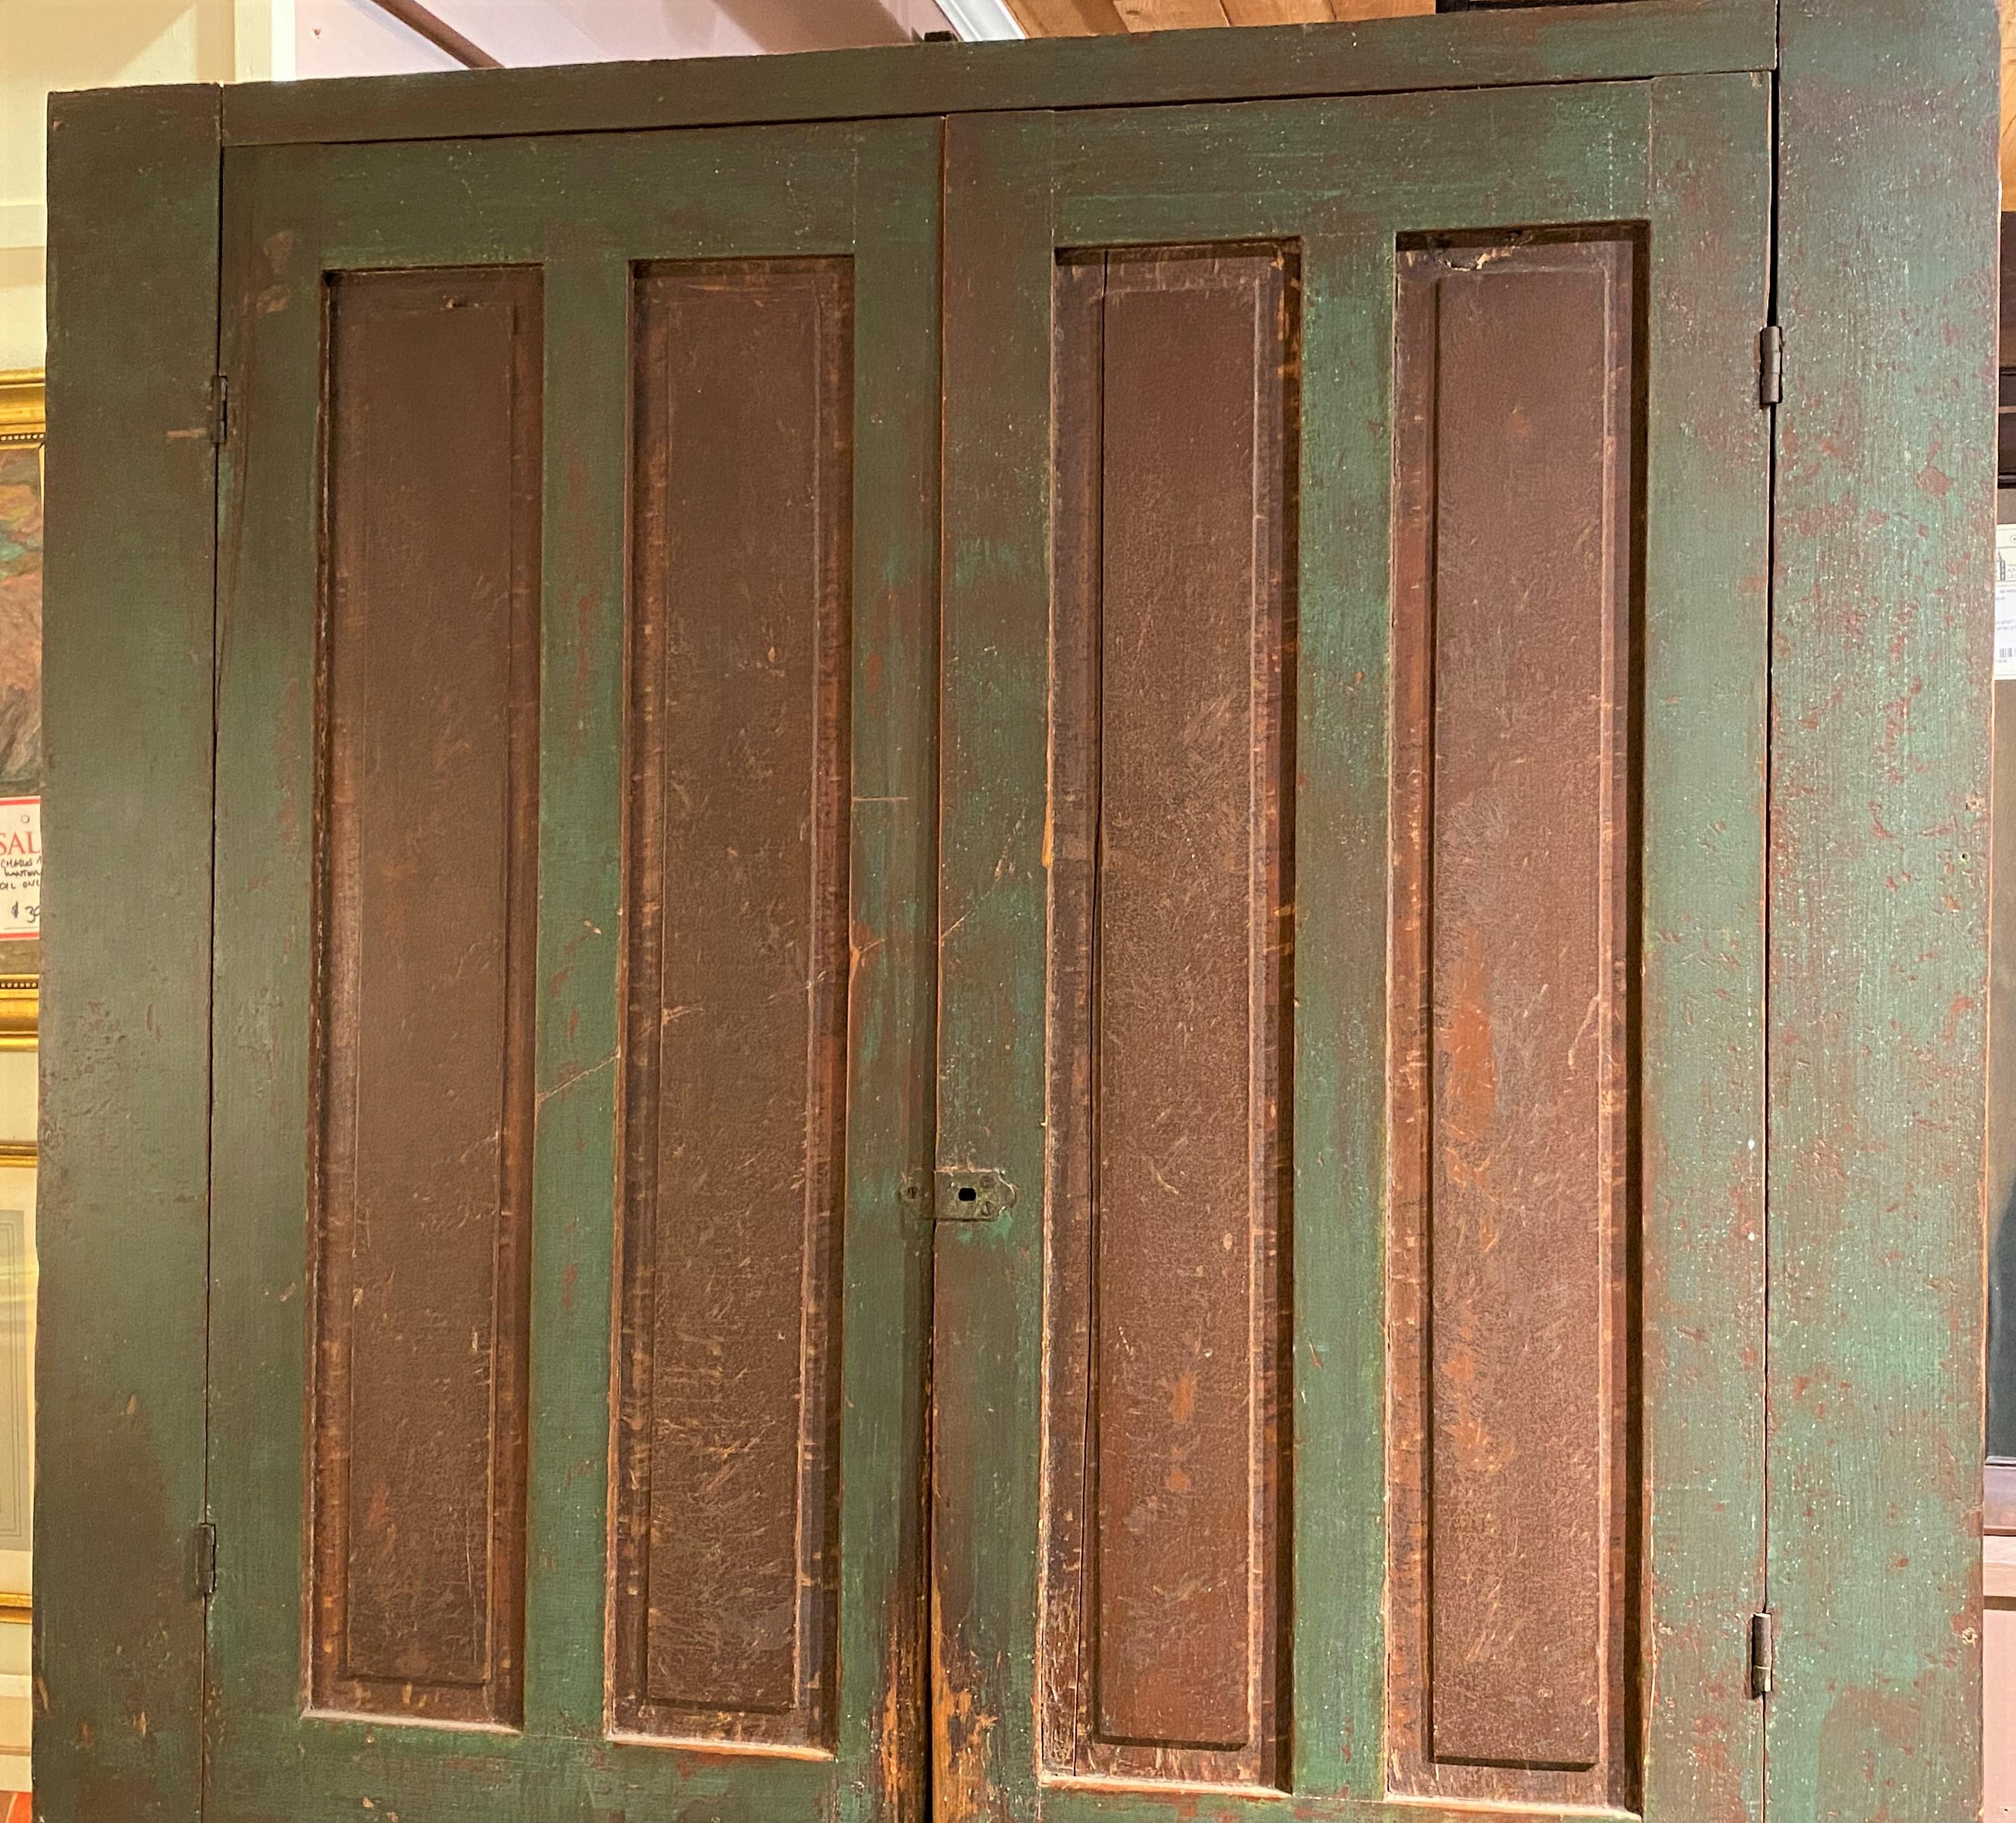 Ein wundervoller großer viertüriger Schrank aus Neuengland-Kiefer mit doppelten Paneelen an jeder Tür, die sich zu vier Innenfächern öffnen, in alter grüner Farbe mit rotbraunen Paneel-Highlights und schön geschnitztem Sockel am Boden. Der Schrank